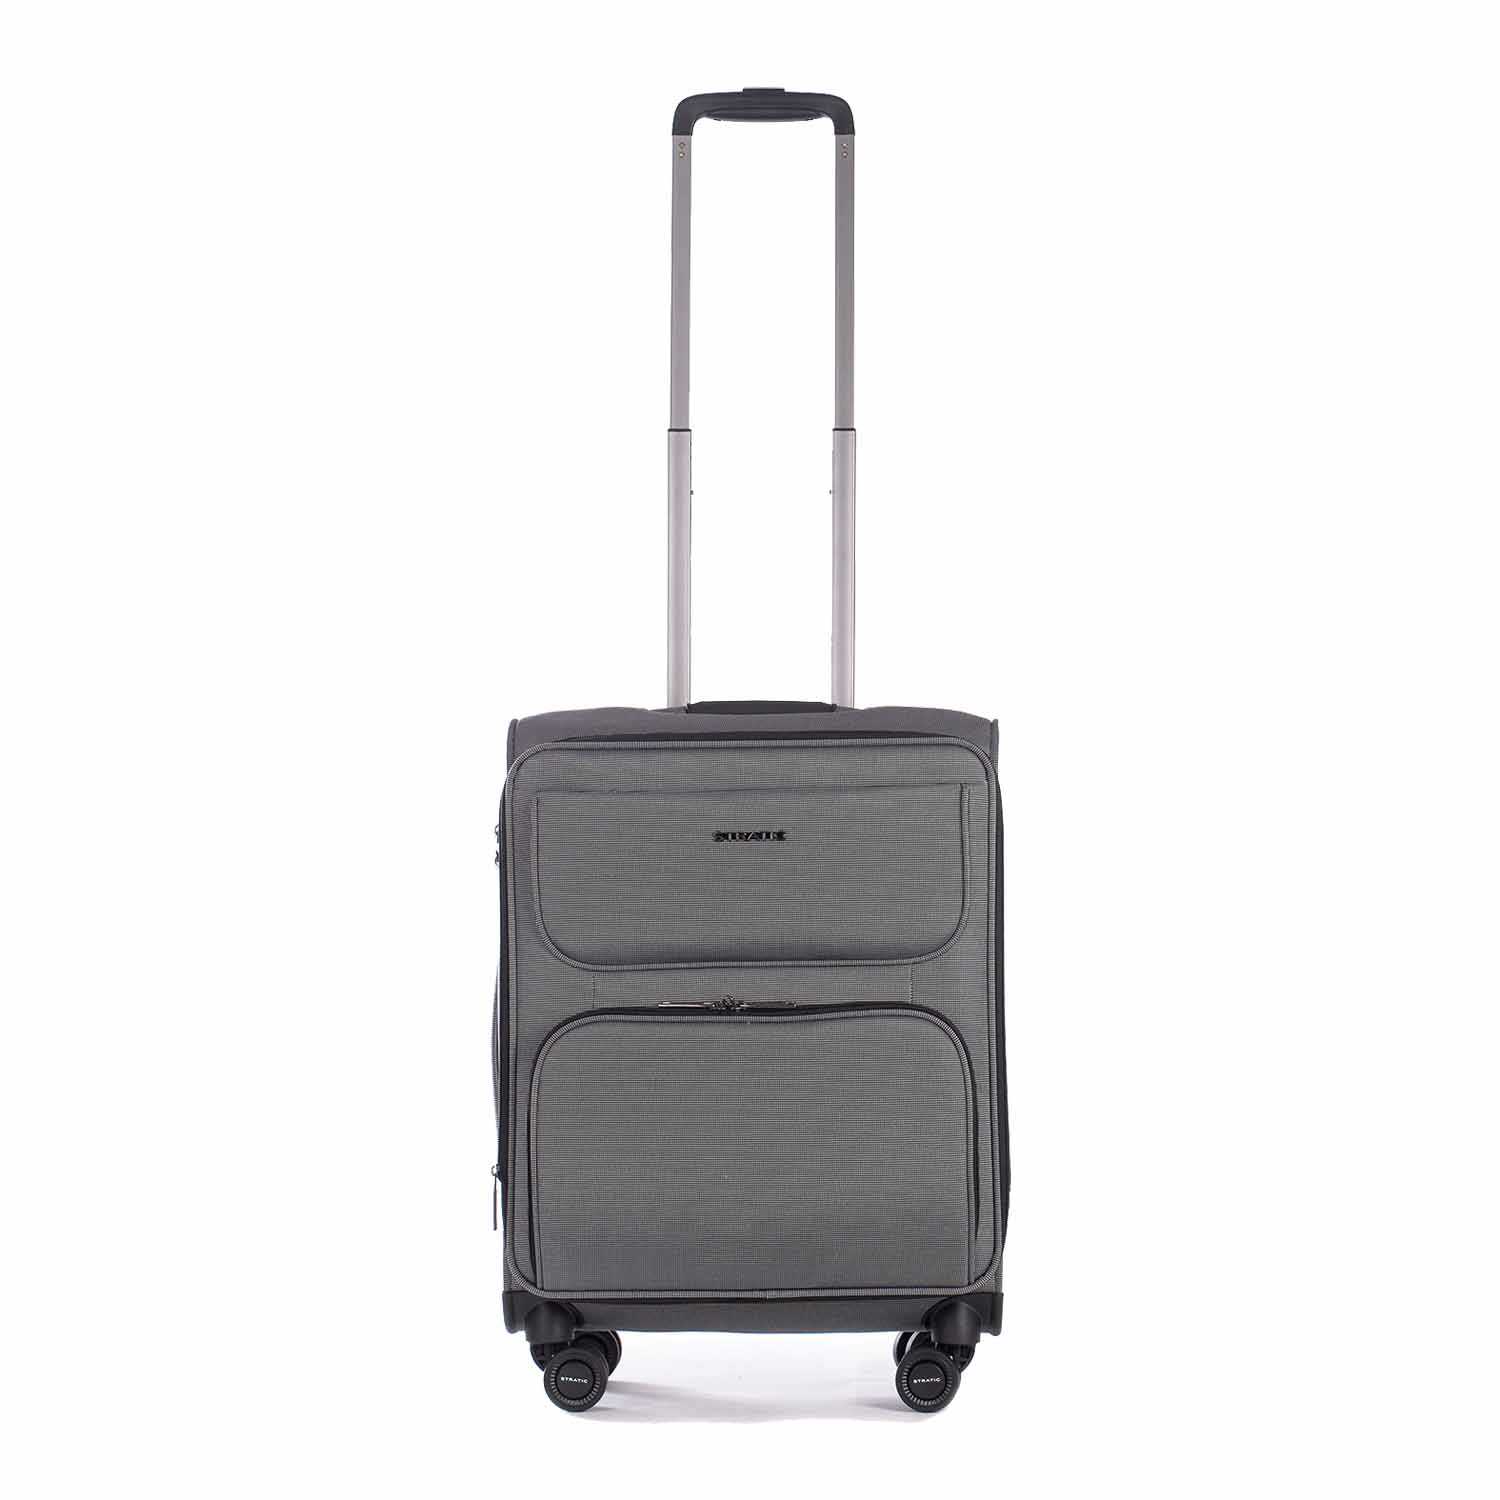 Stratic Bendigo Light + Koffer S silver | jetzt online kaufen auf Koffer.de  ✓